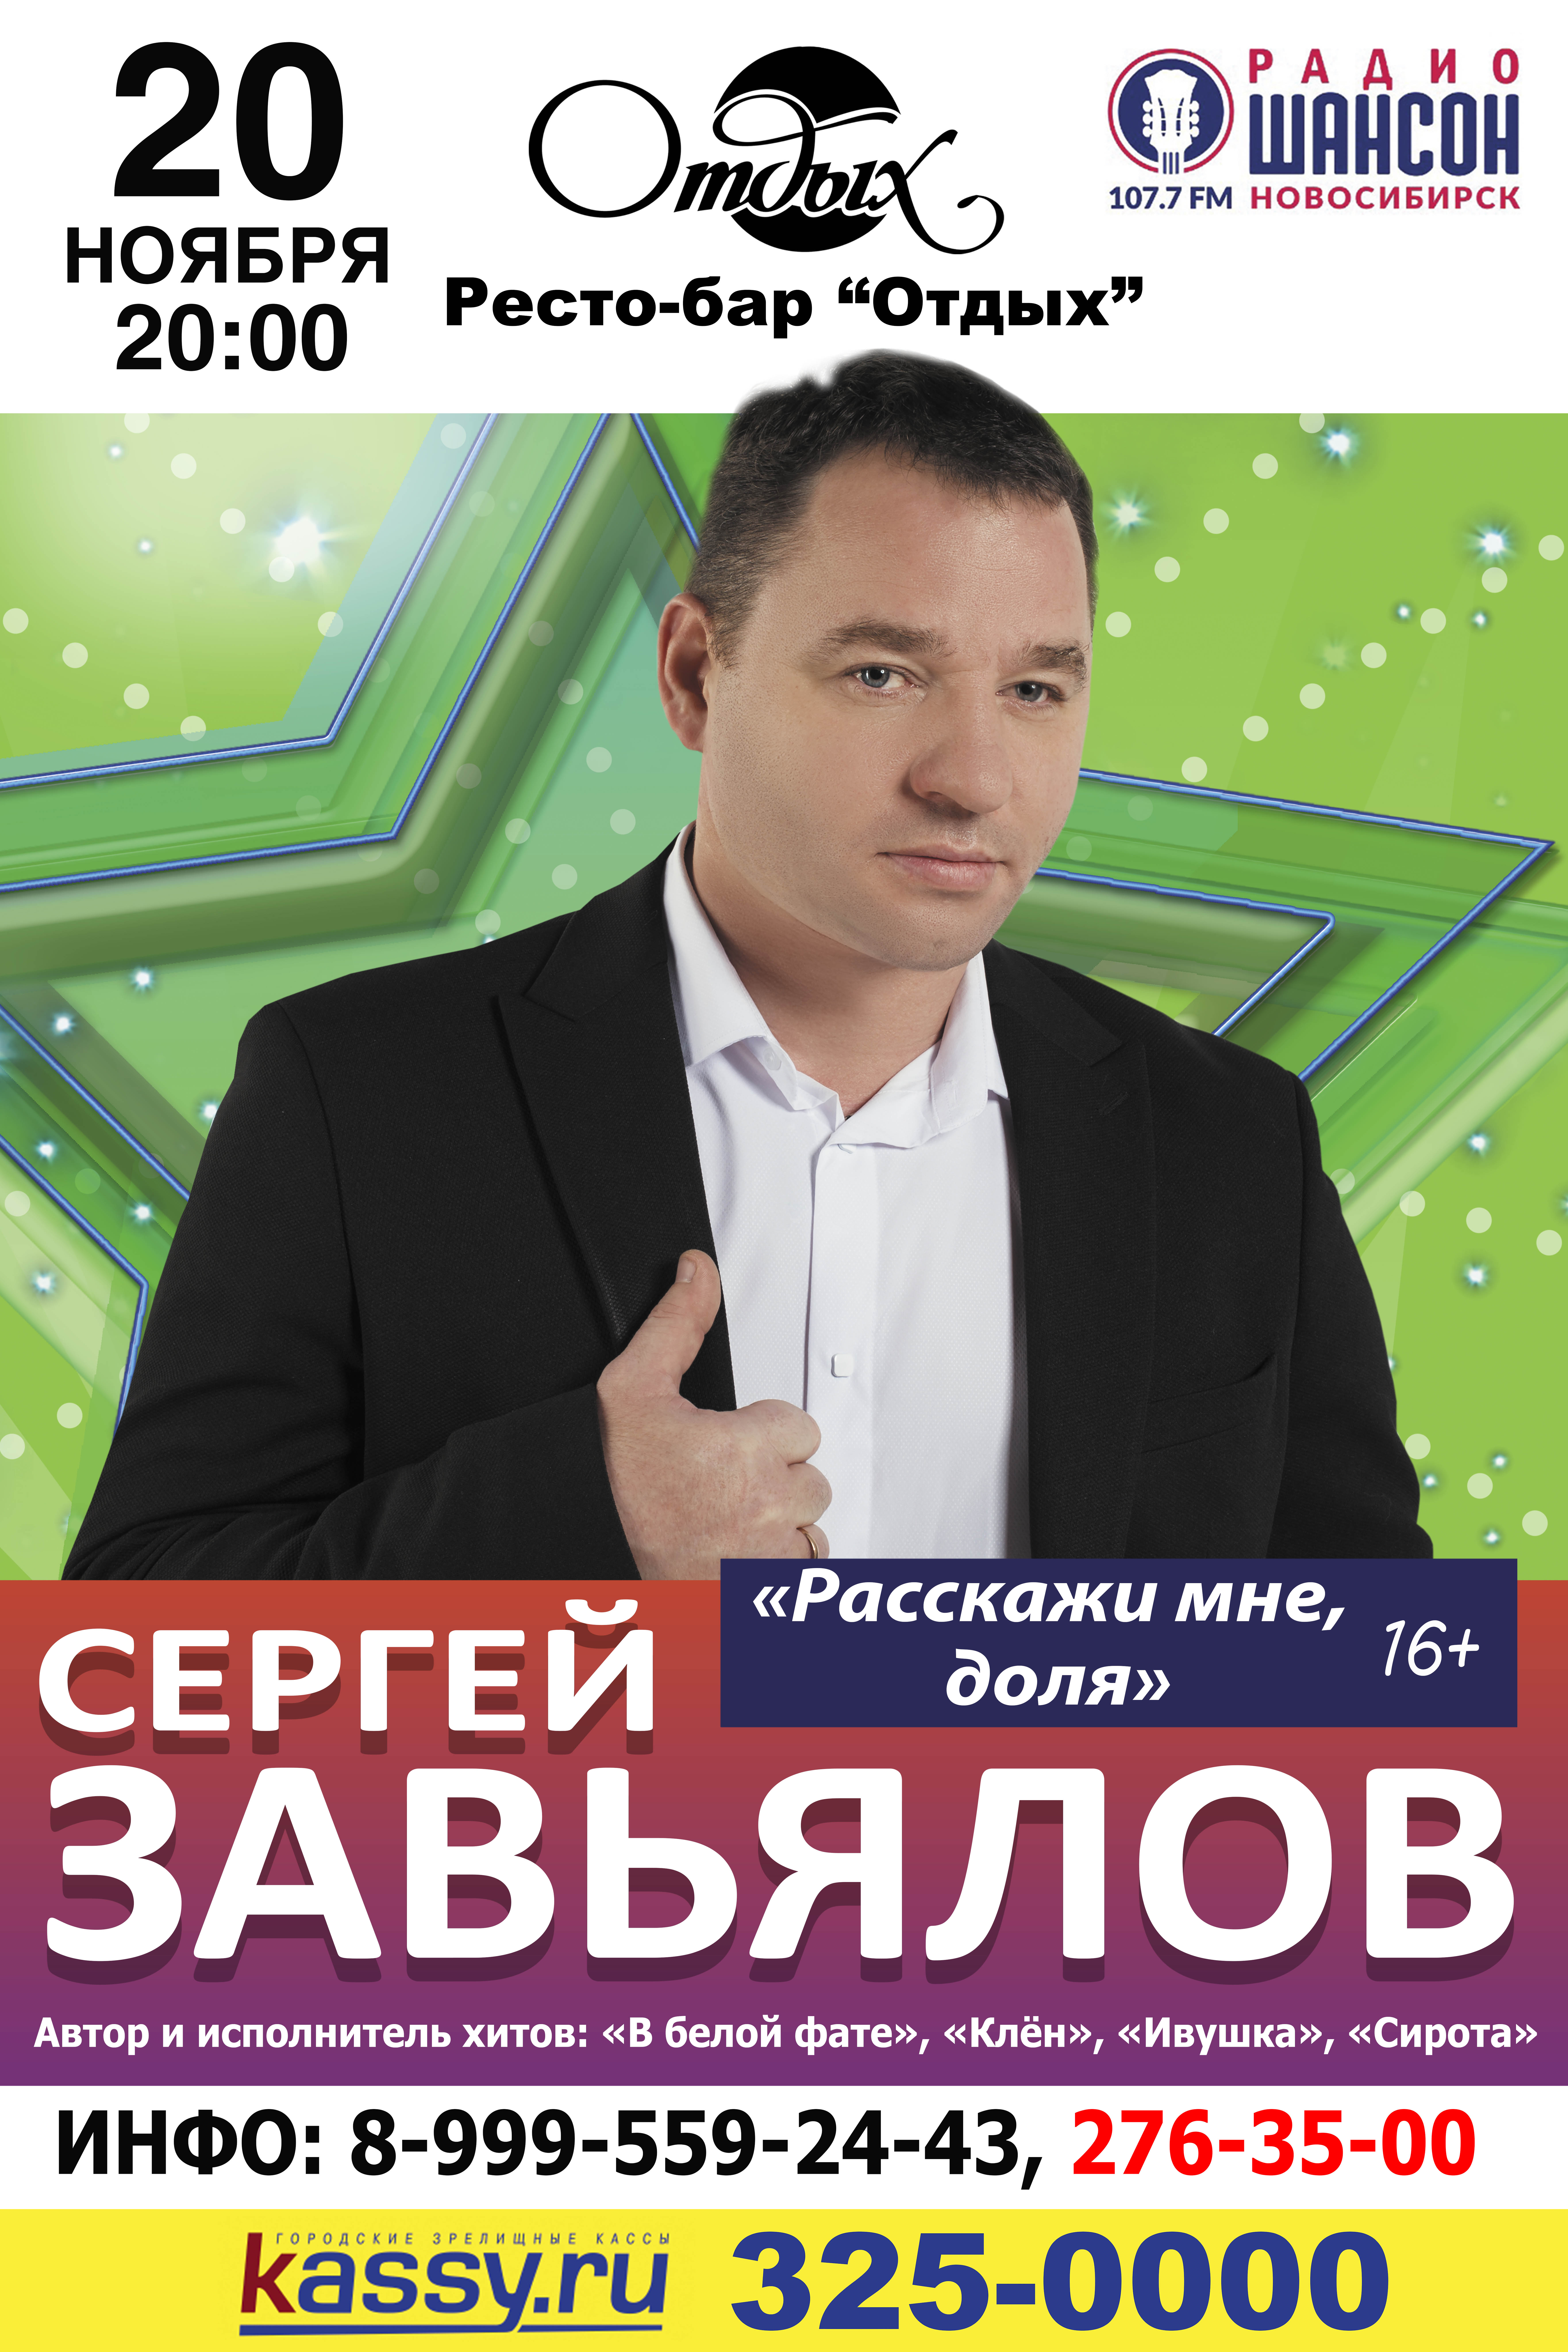 Концерт Сергея Завьялолва